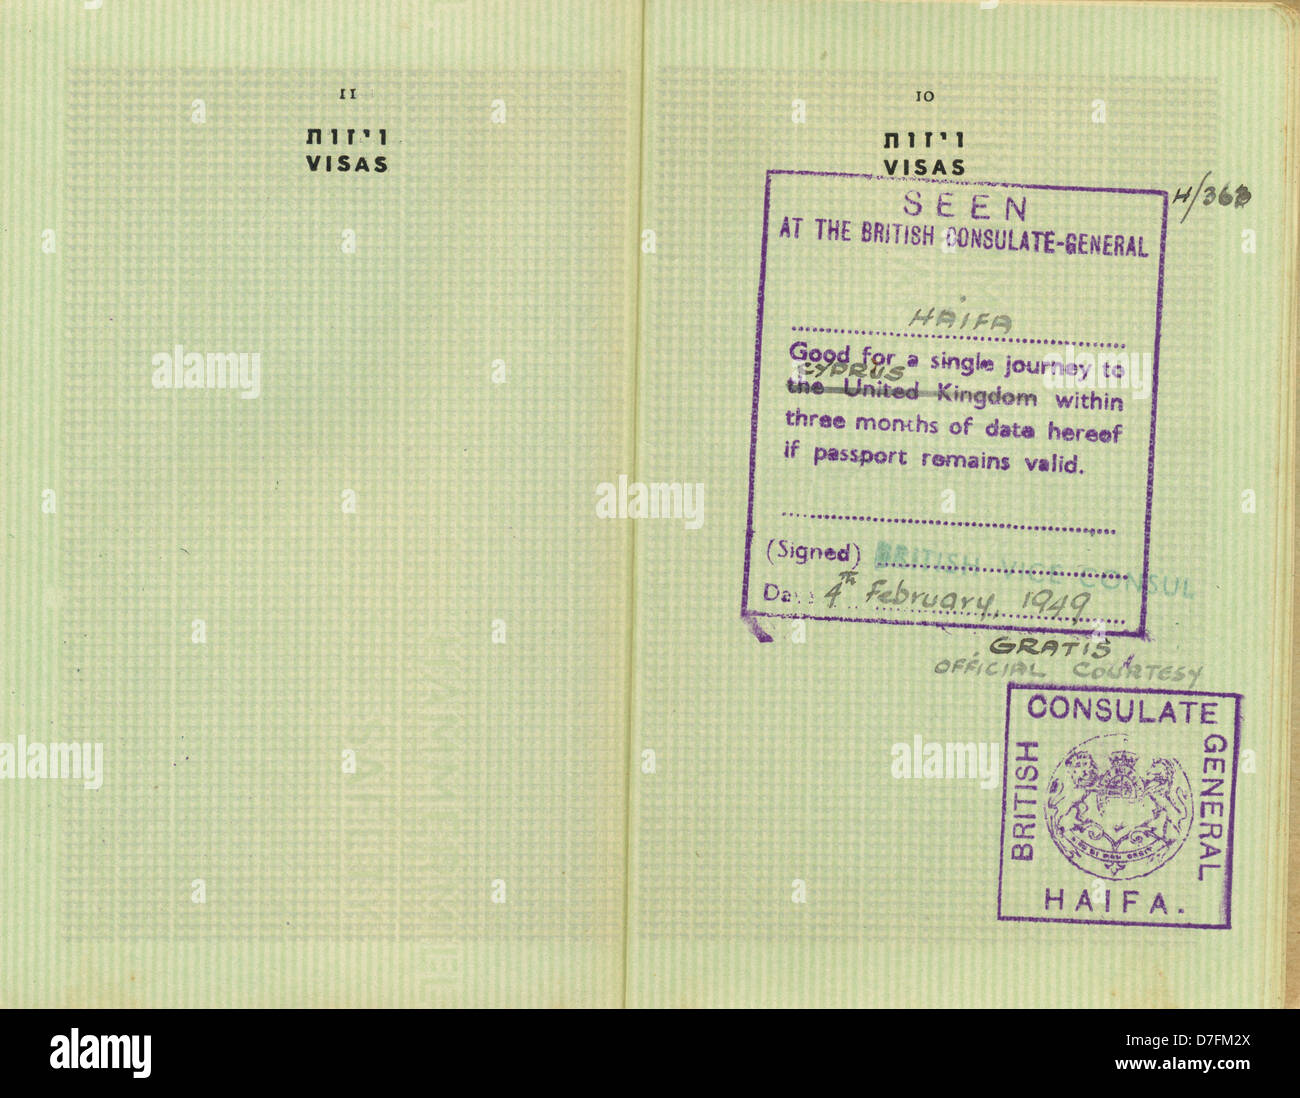 Stampigliato pagine 10-11 pre-Israele vintage palestinese passaporto rilasciato nel 1946 a volte quando British impero governato area. Buona come Foto Stock